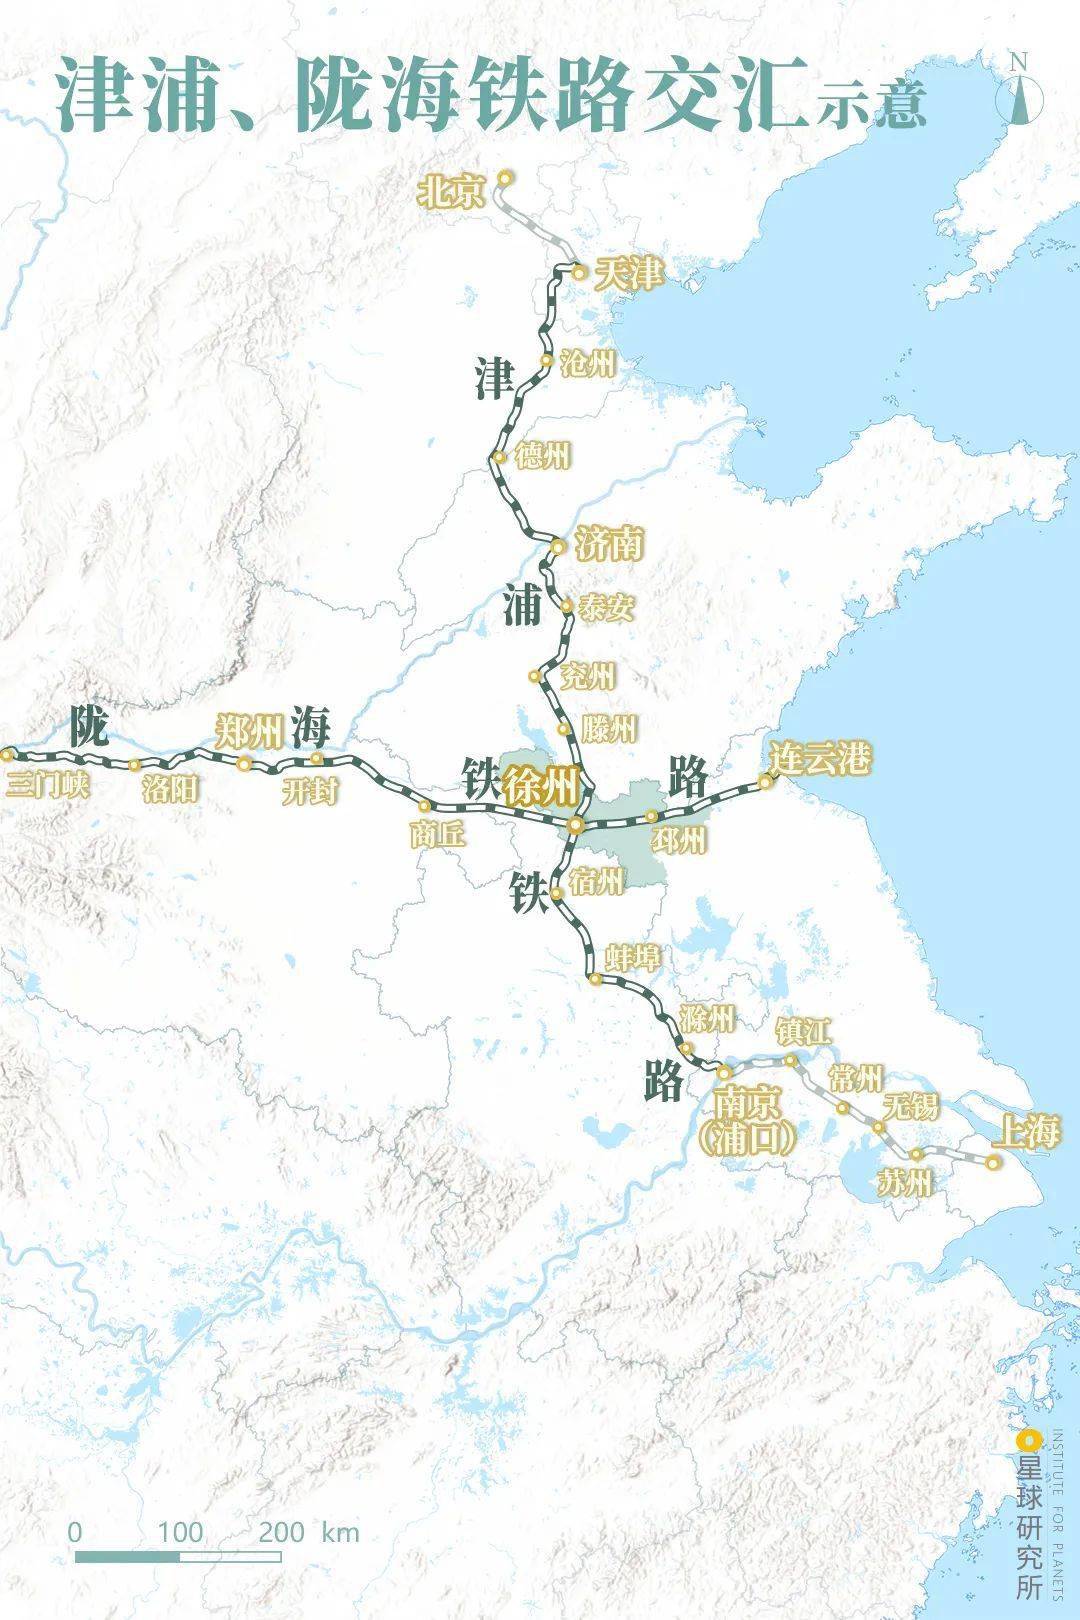 相继建成通车 徐州成为了当时中国 主要的铁路枢纽  (津浦铁路,陇海